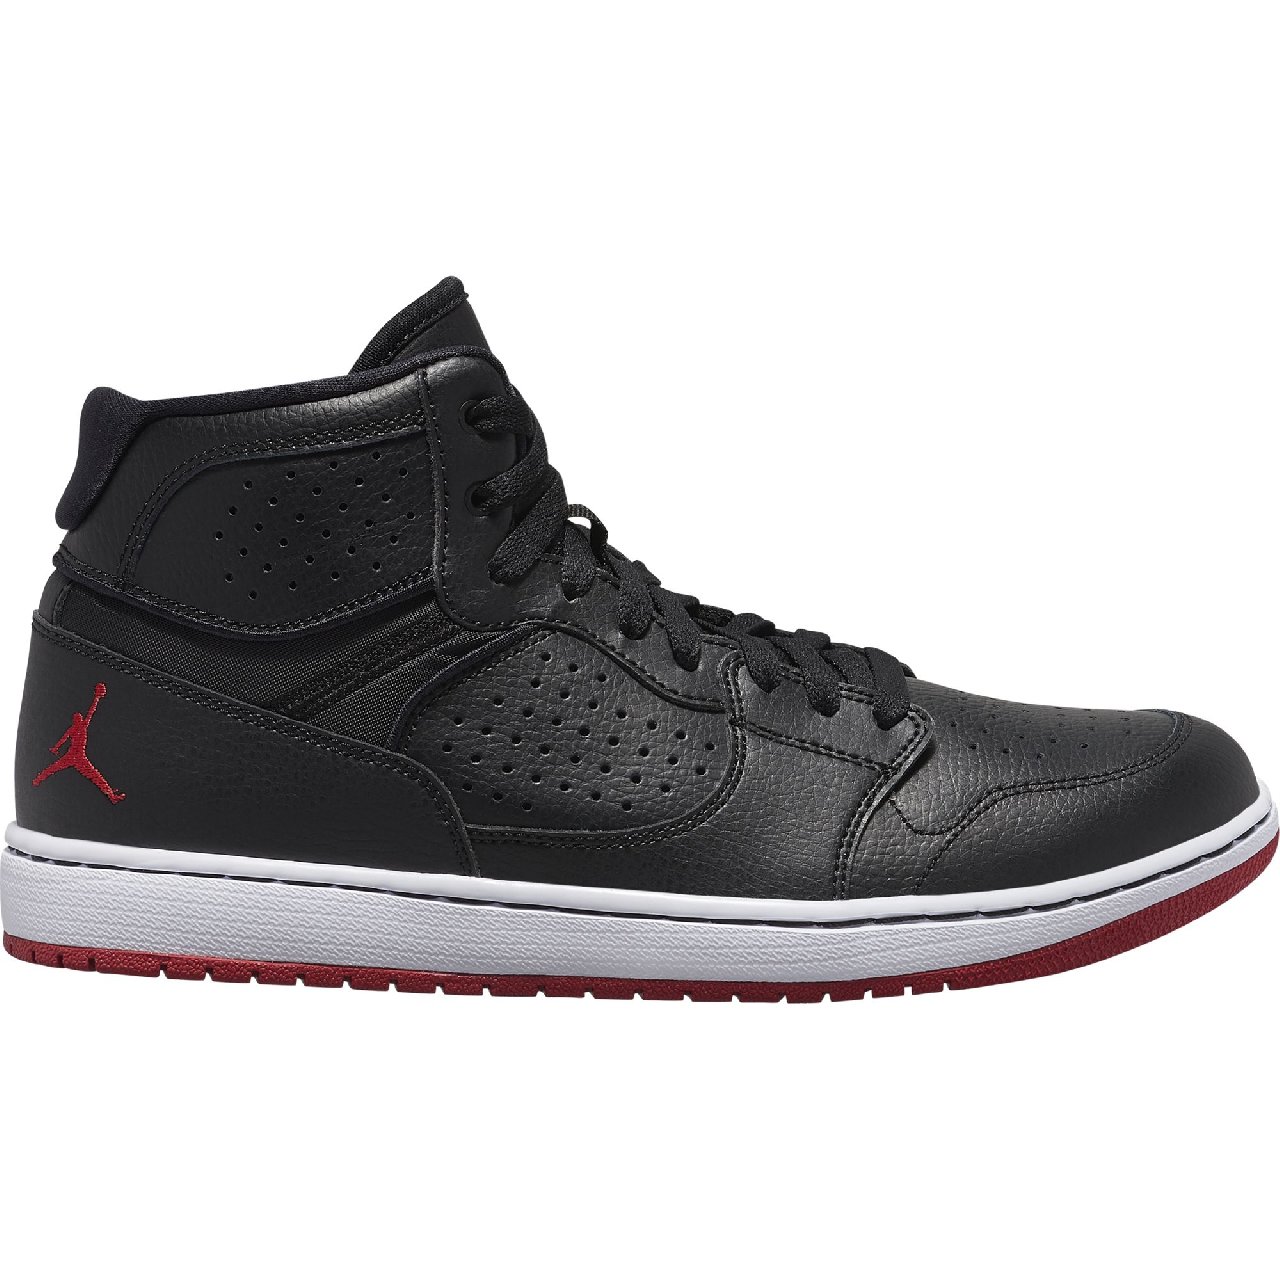 Спортивная обувь m Nike JORDAN ACCESS black/gym red-white